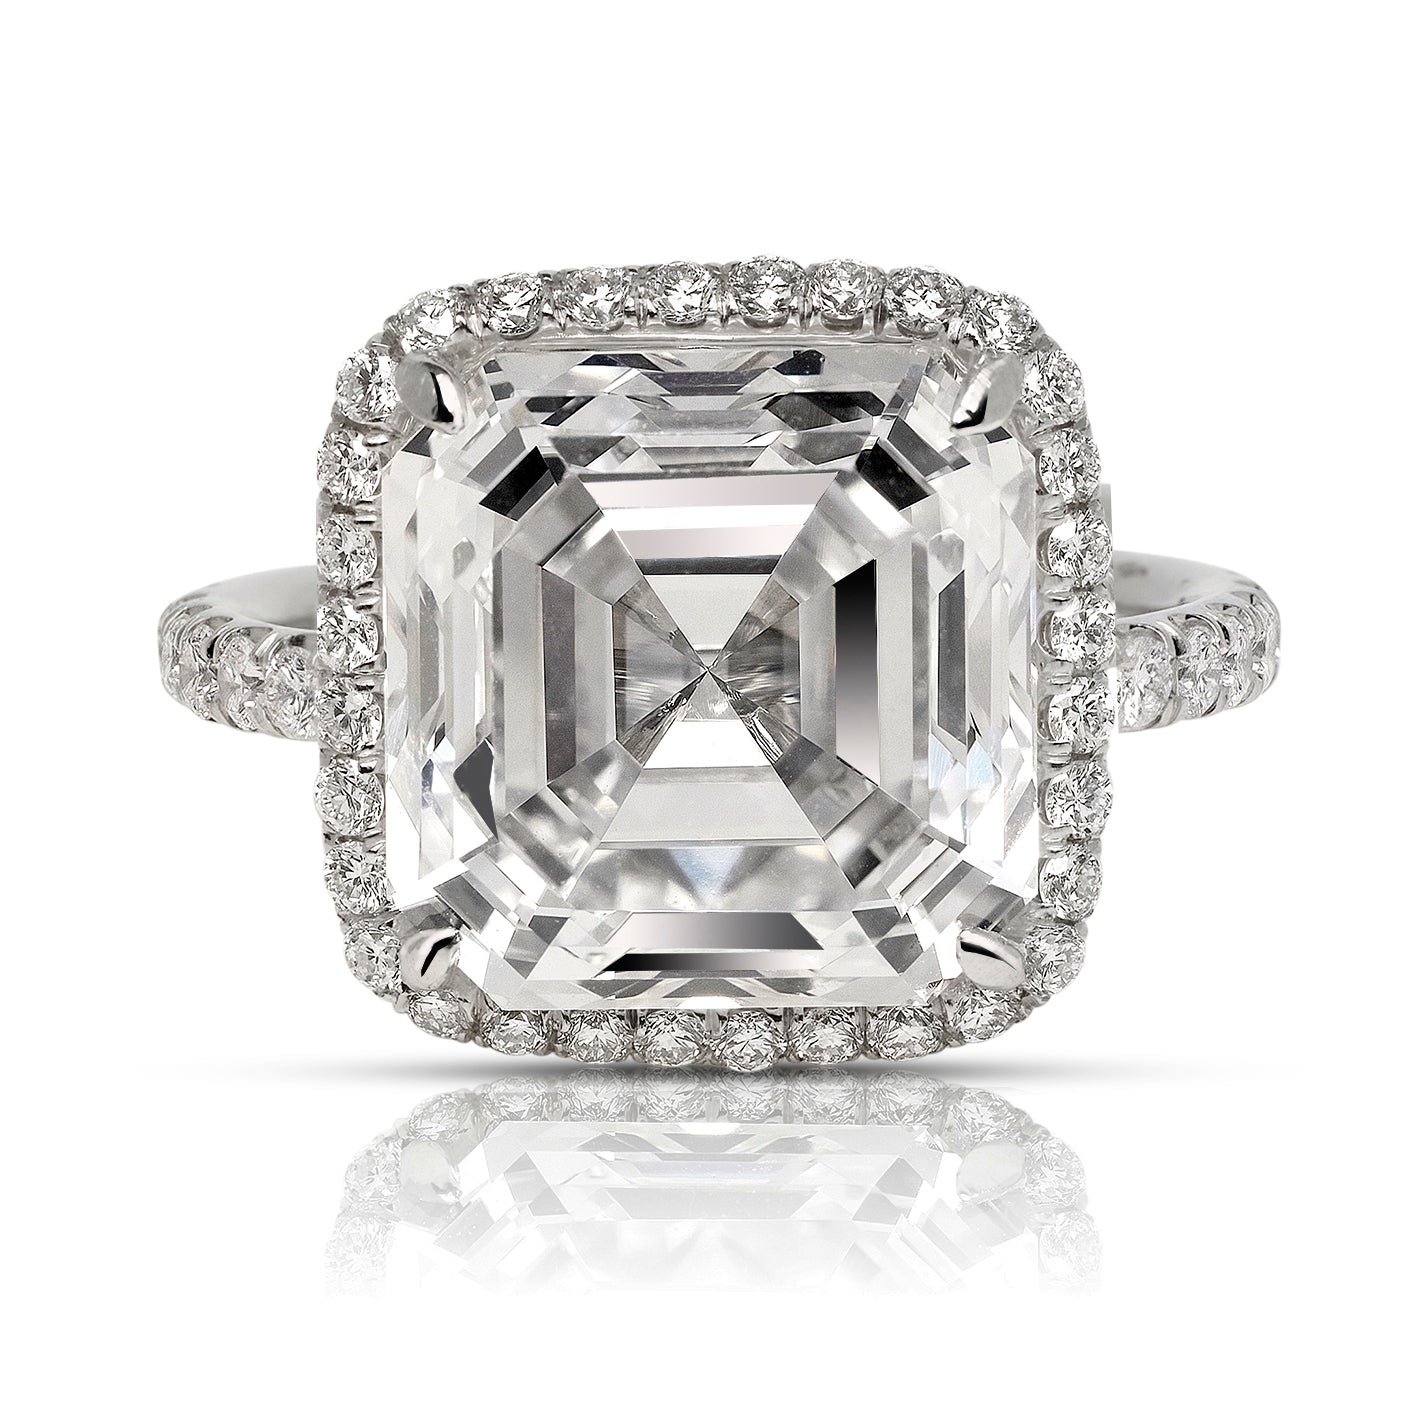 30.06 carat Asscher Cut Diamond Ring – Ronald Abram